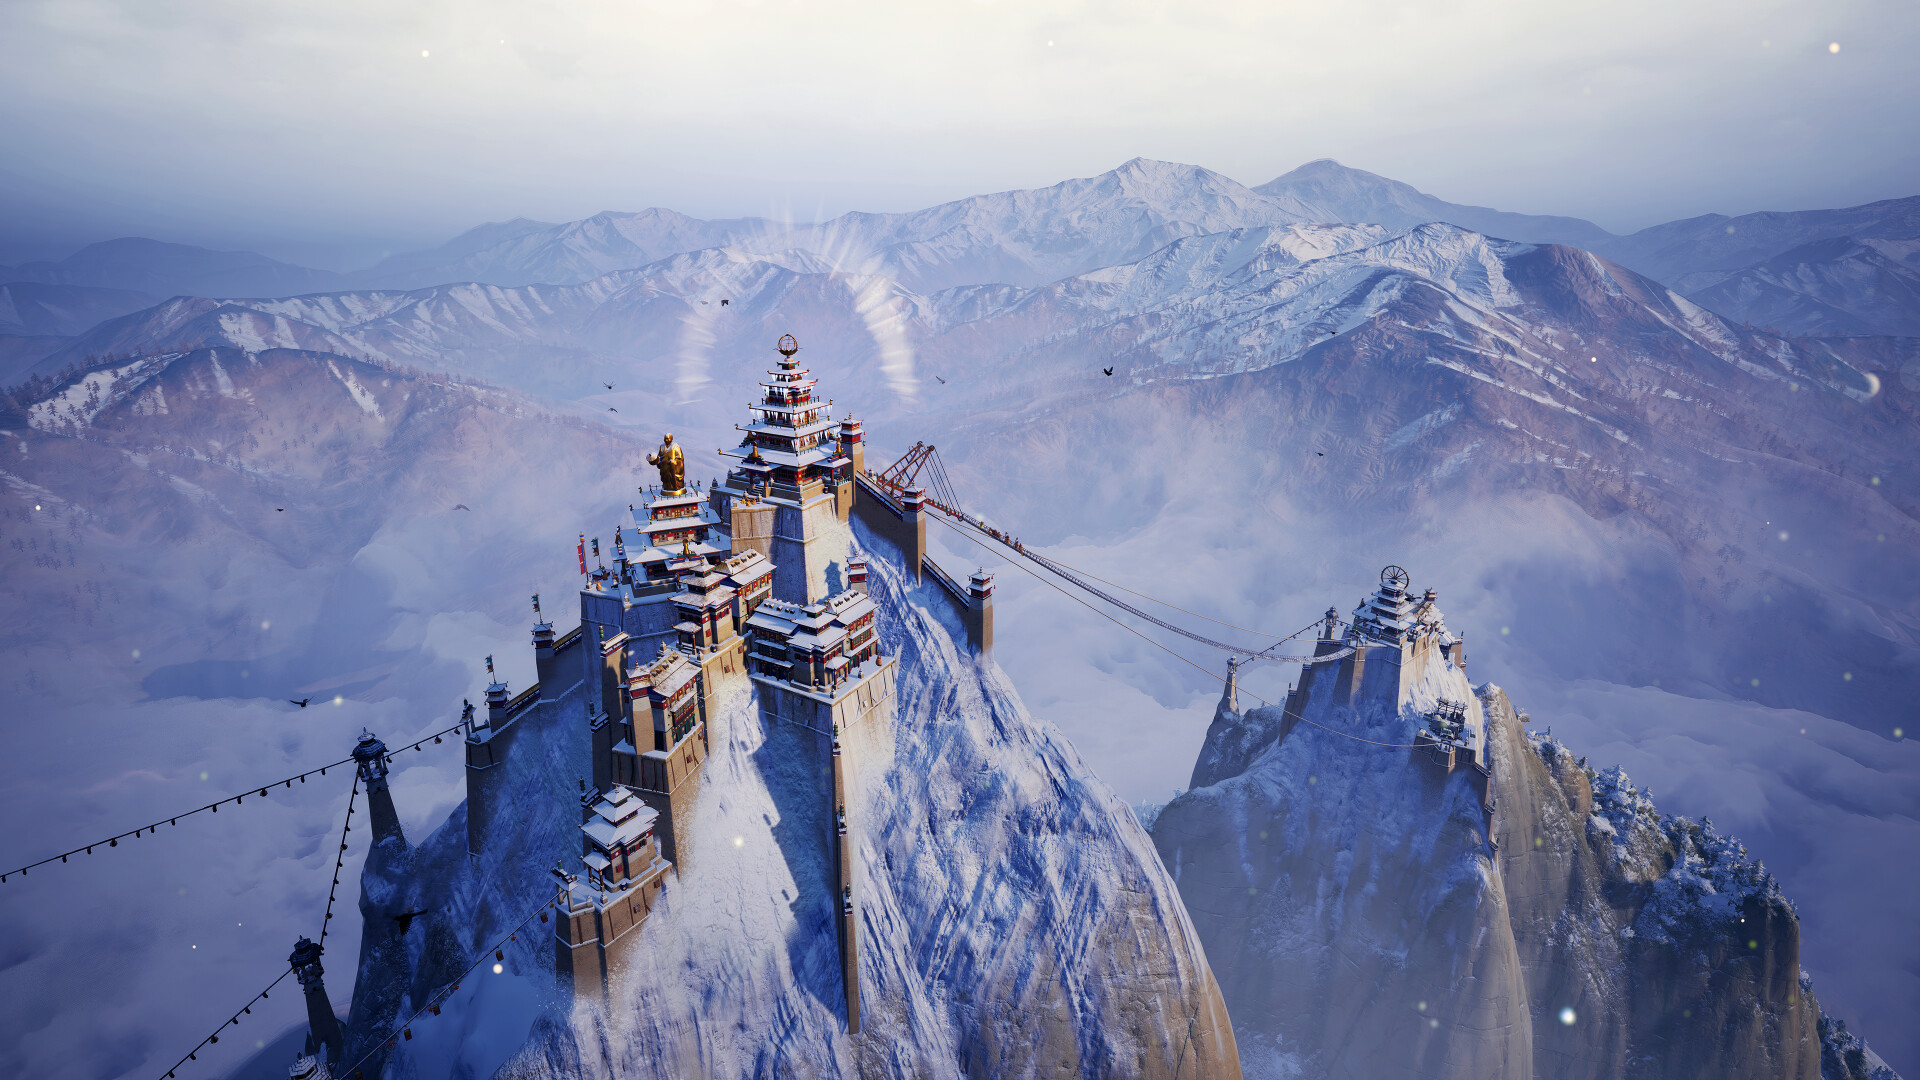 都市修筑游戏《肋萨拉：峰顶王国》现已经在Steam平台争先体验发售